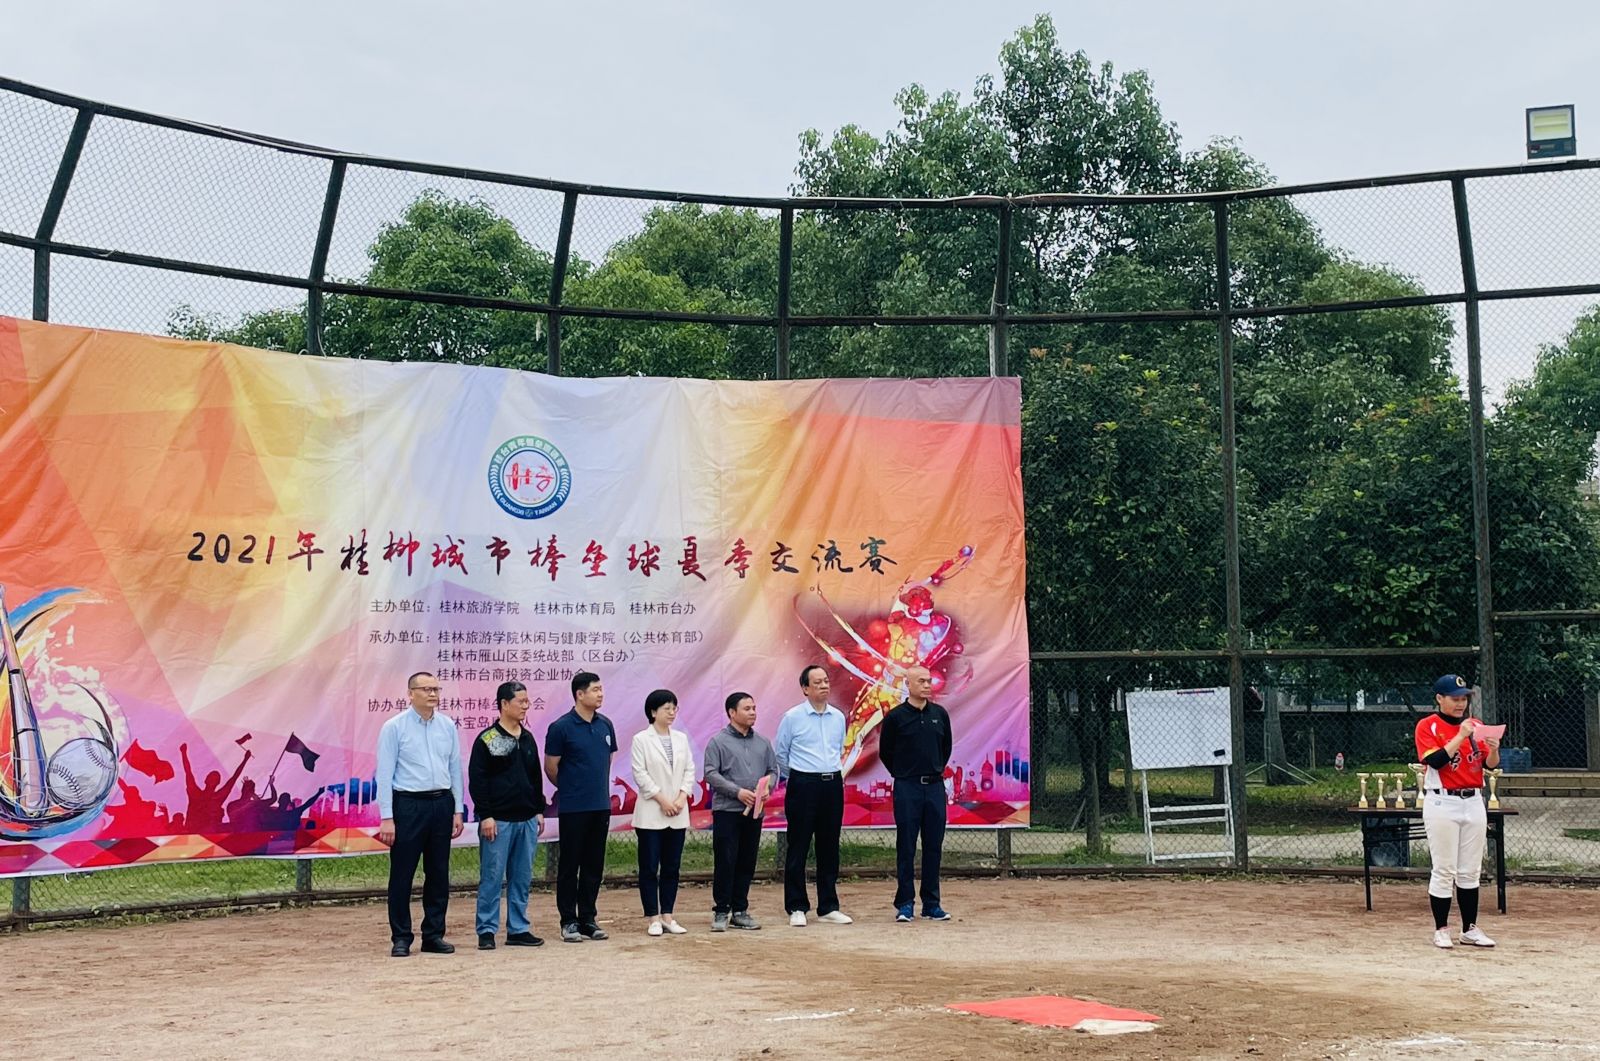 桂柳城市棒壘球夏季交流賽現場照片。